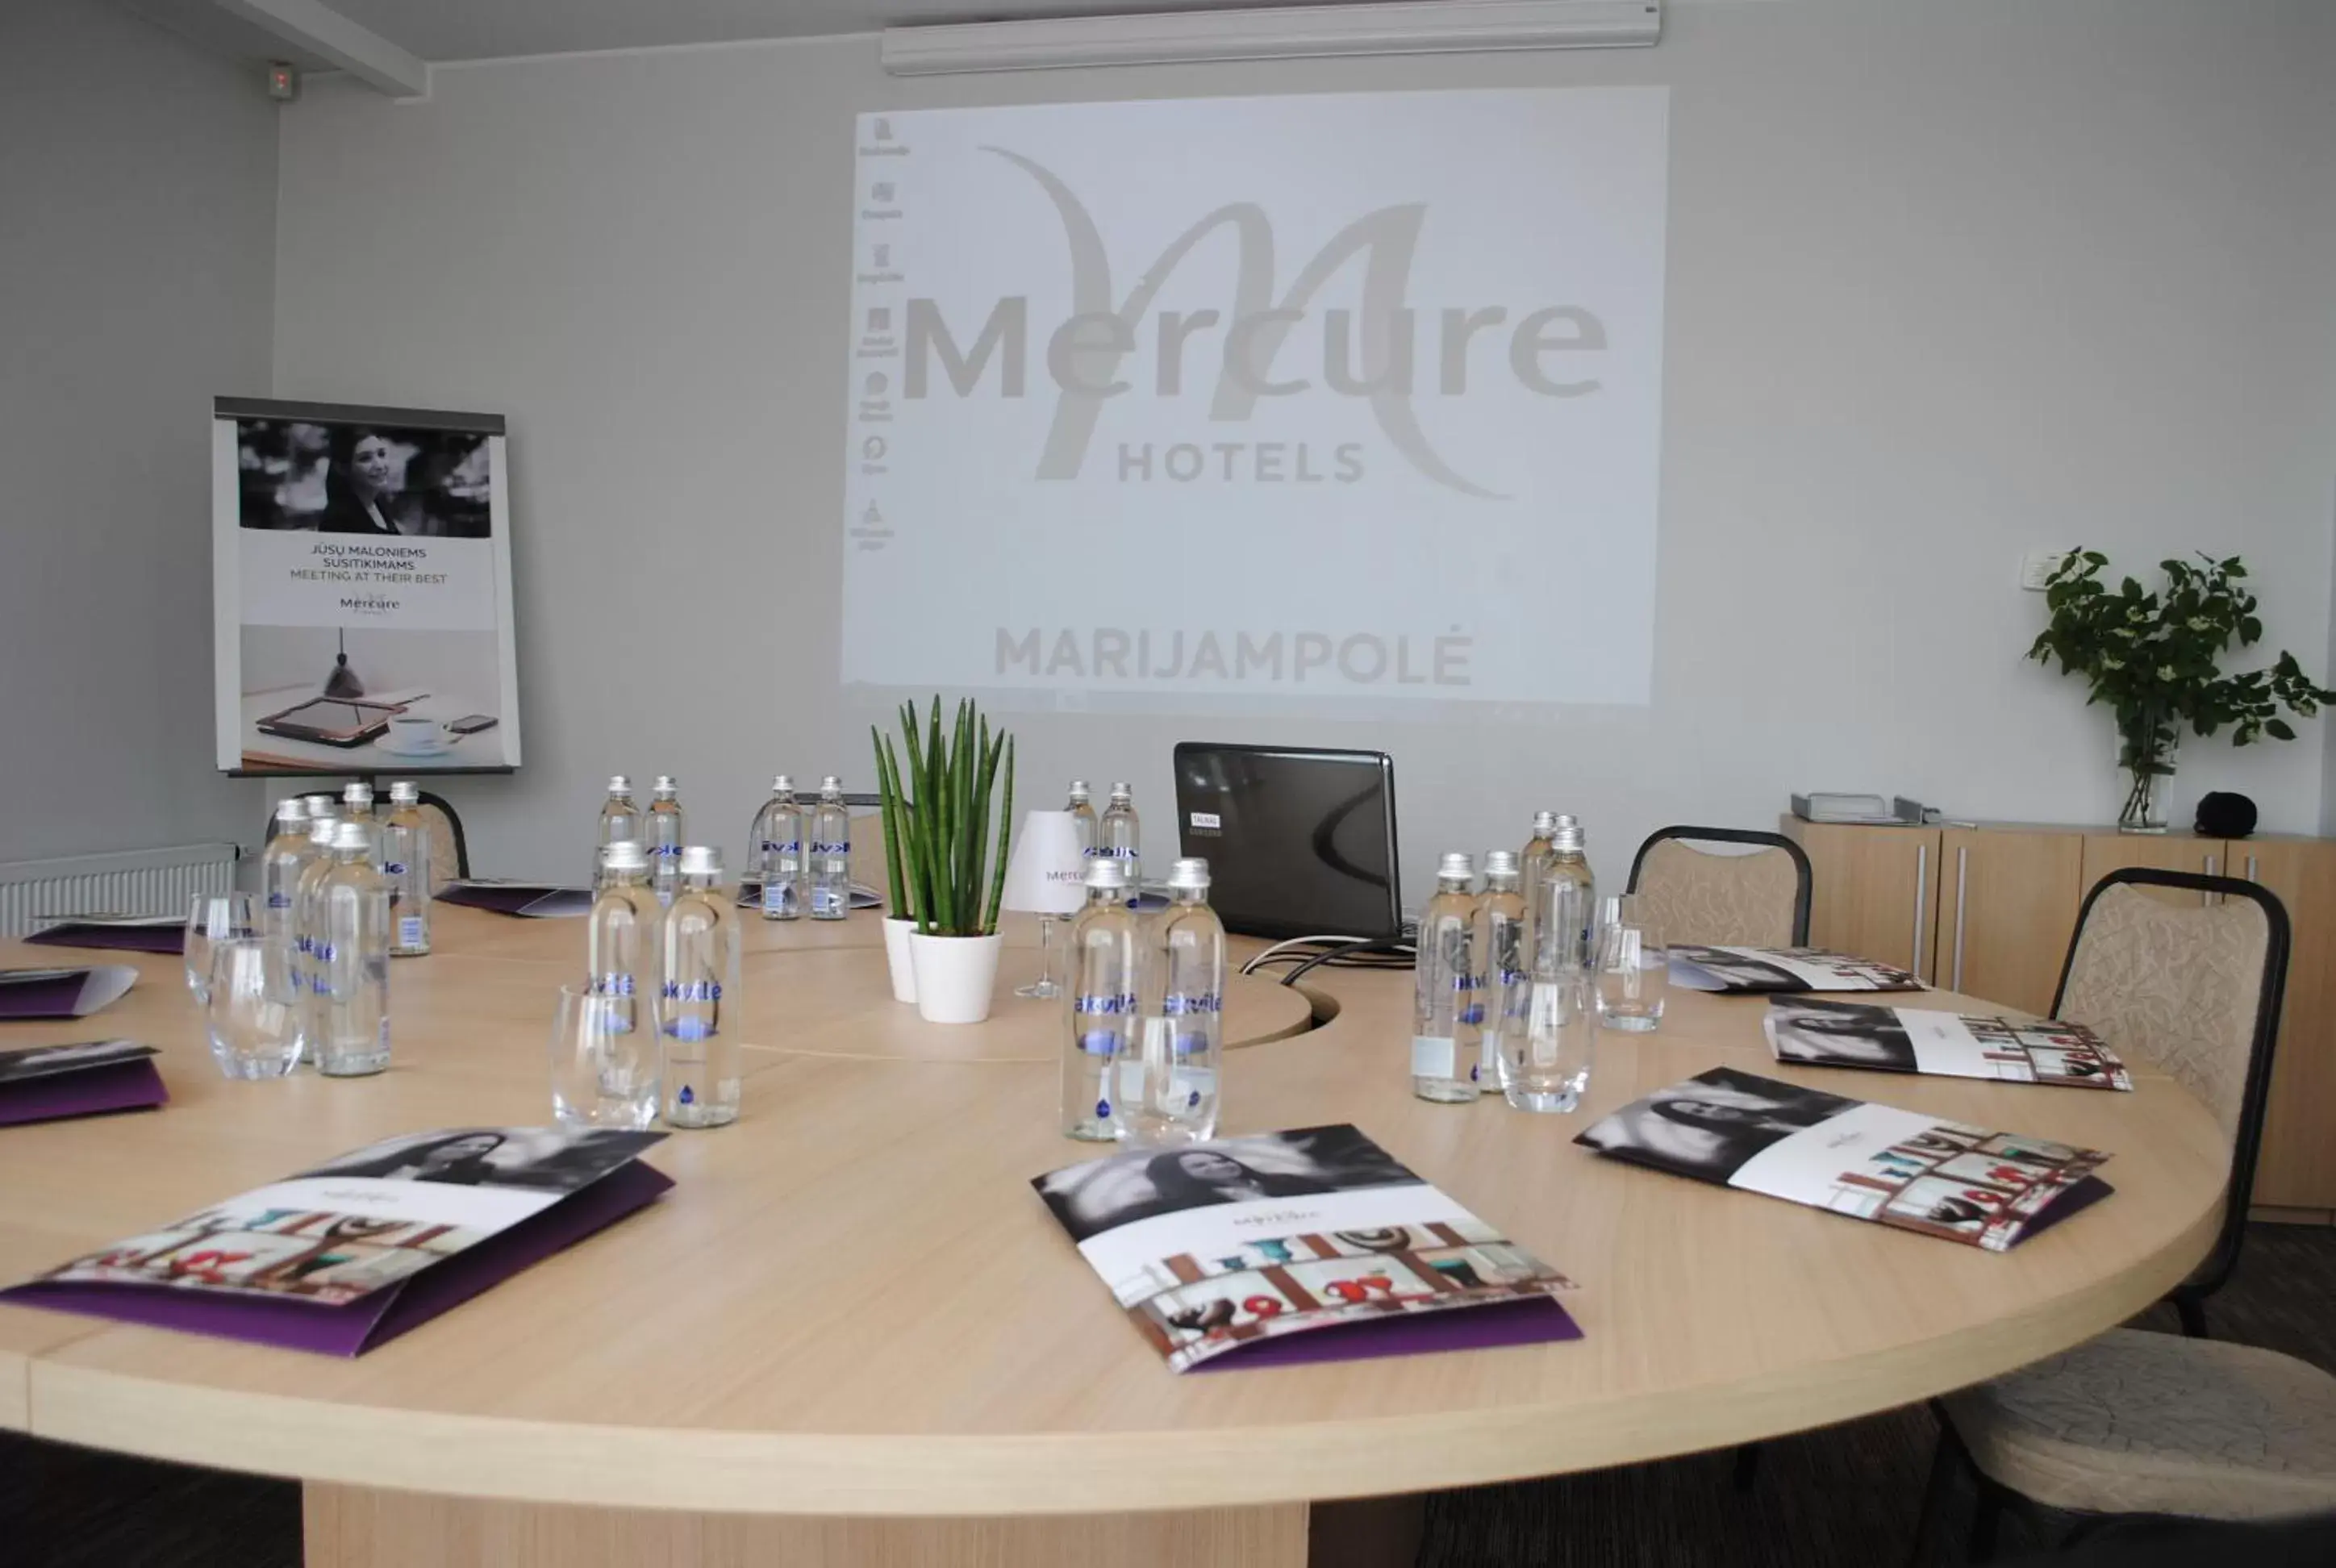 Business facilities in Mercure Marijampole